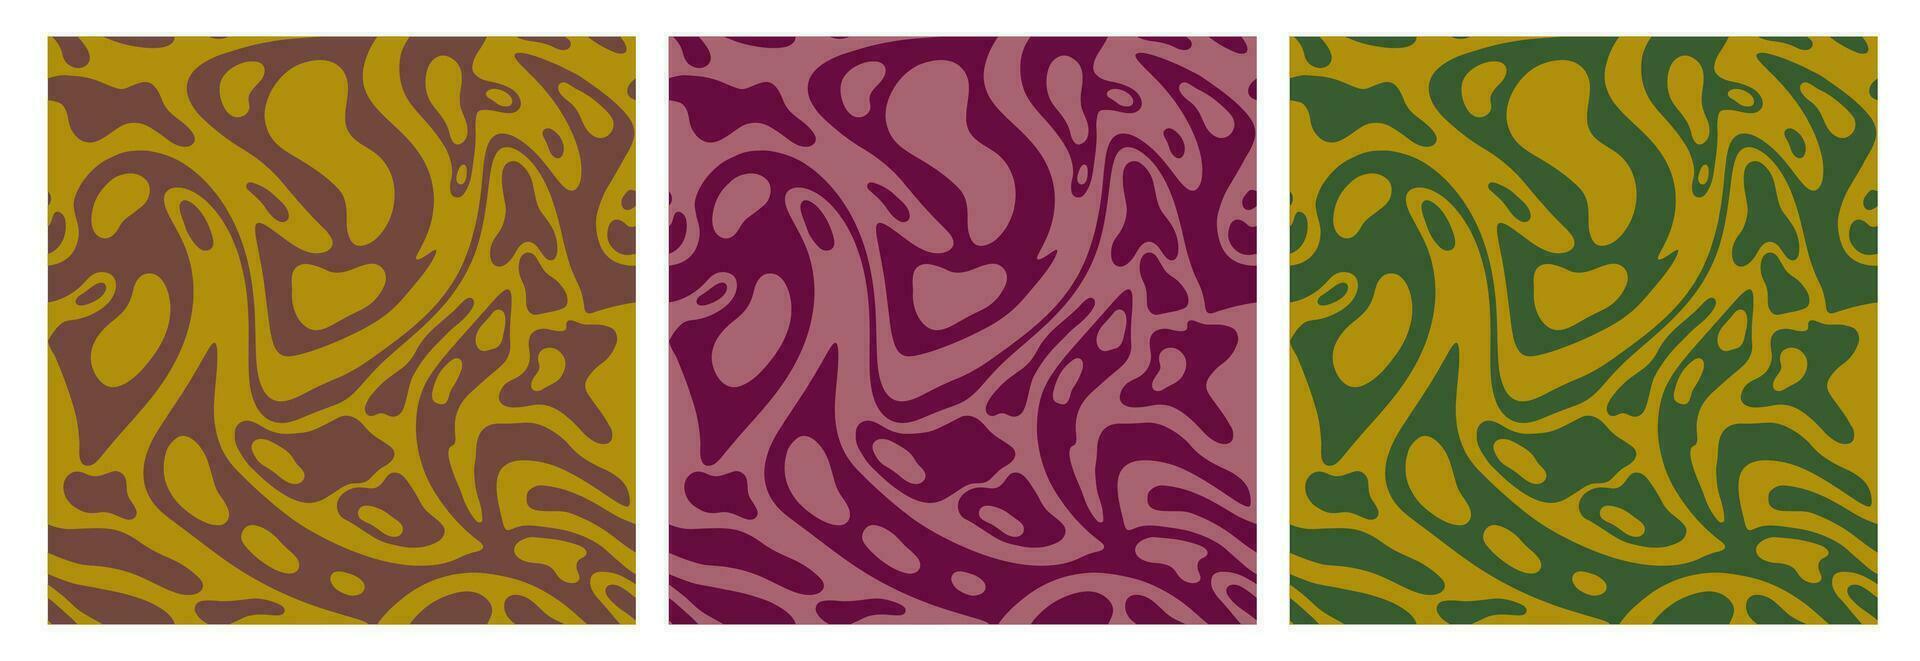 reeks van golvend naadloos trippy patronen in aards kleuren. vector texturen met glad golven. abstract vector kolken achtergronden in retro stijl.